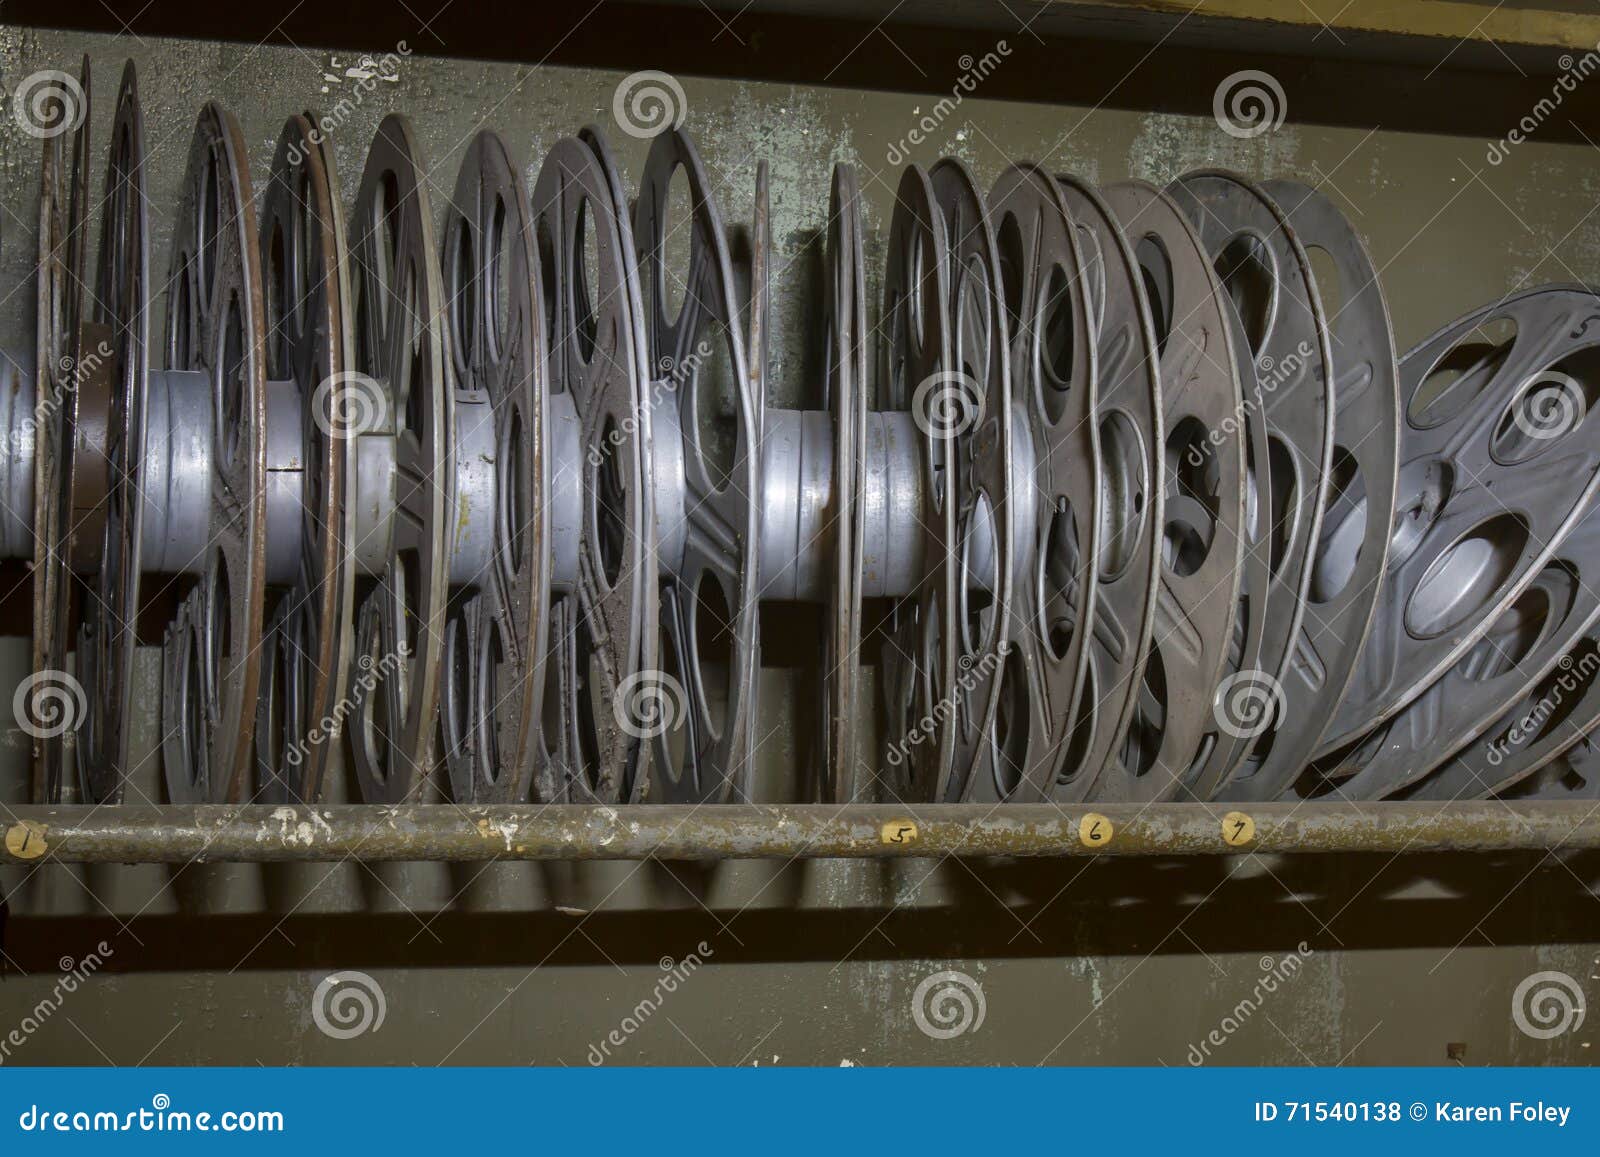 Rack of Vintage Movie Reels Stock Photo - Image of reel, reels